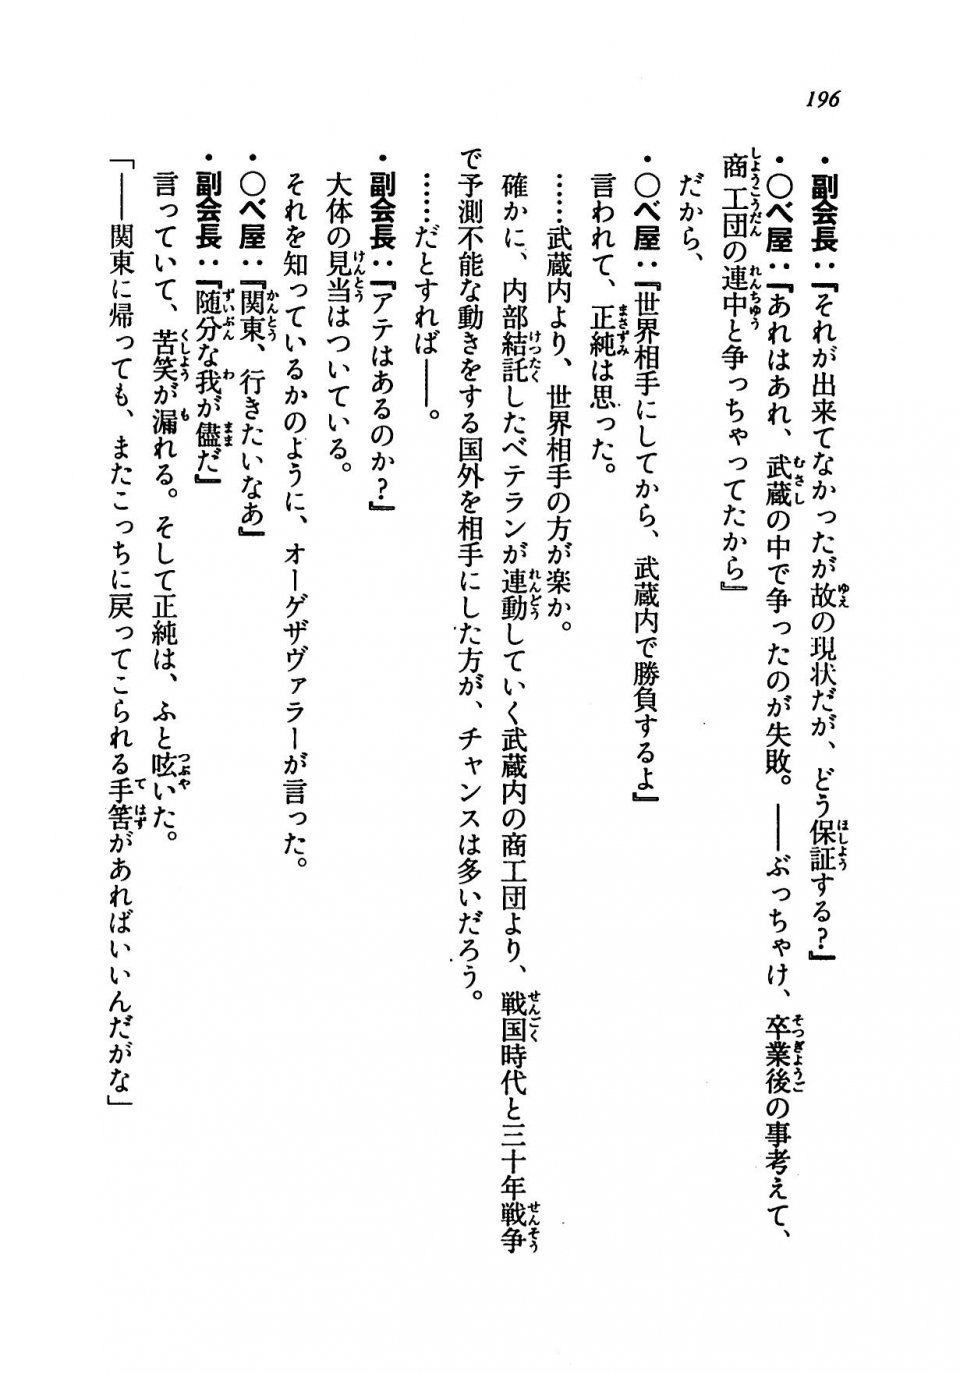 Kyoukai Senjou no Horizon LN Vol 19(8A) - Photo #196